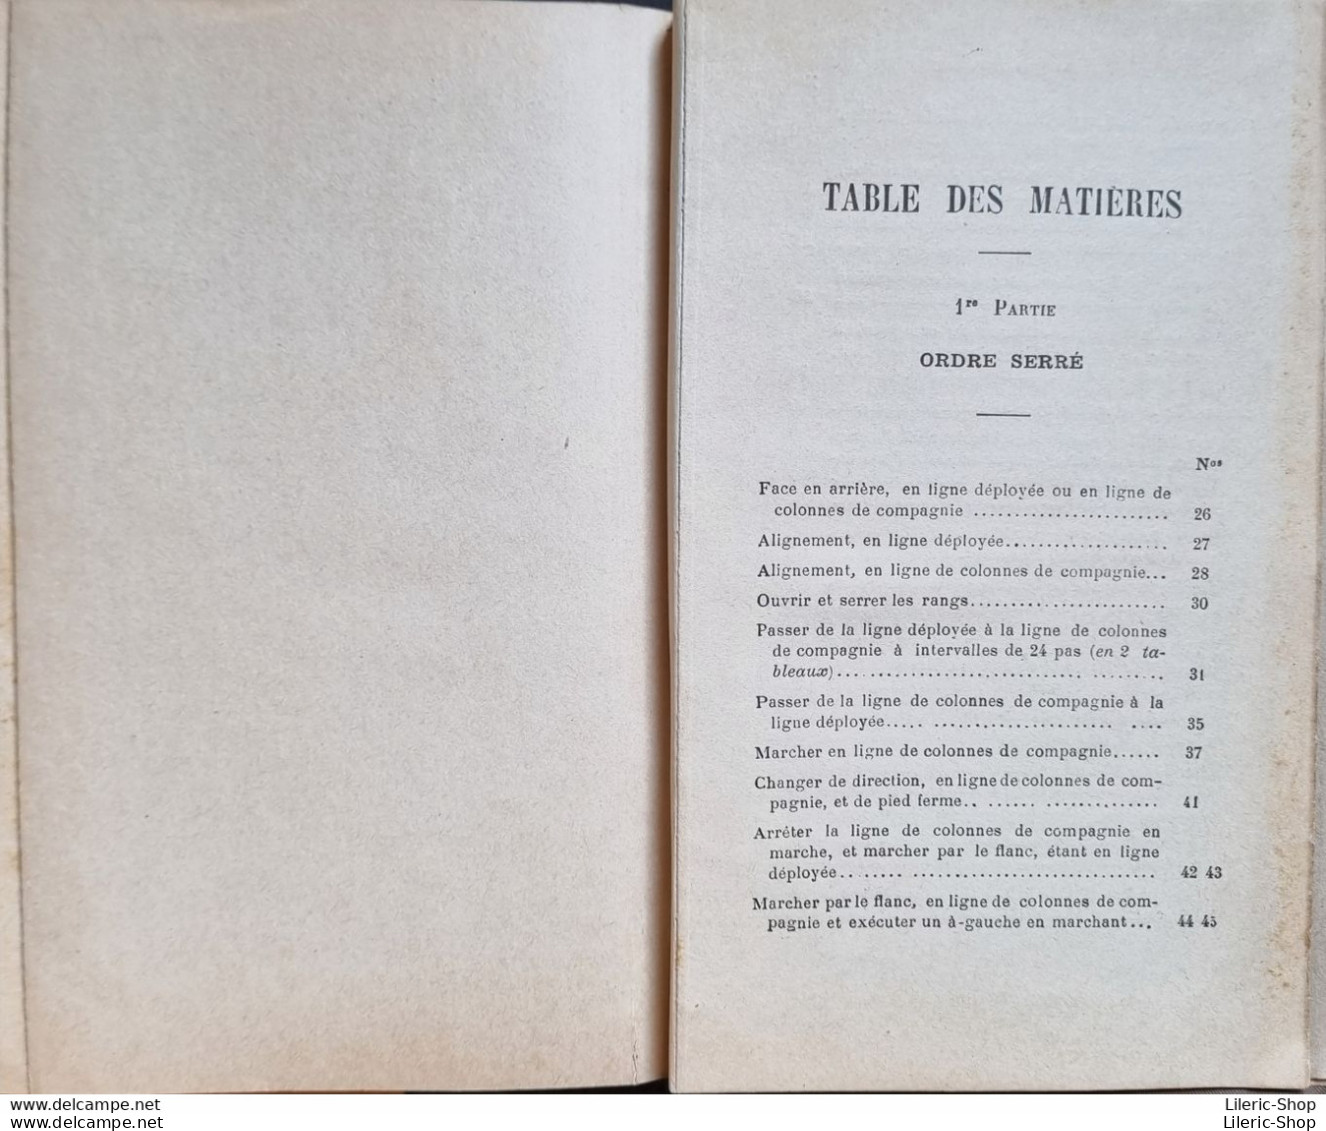 L. SAMION L'ECOLE DE BATAILLON TABLEAUX SYNOPTIQUES  PARIS A LA DIRECTION DU SPECTATEUR MILITAIRE ANNÉE 1890 - Sonstige & Ohne Zuordnung